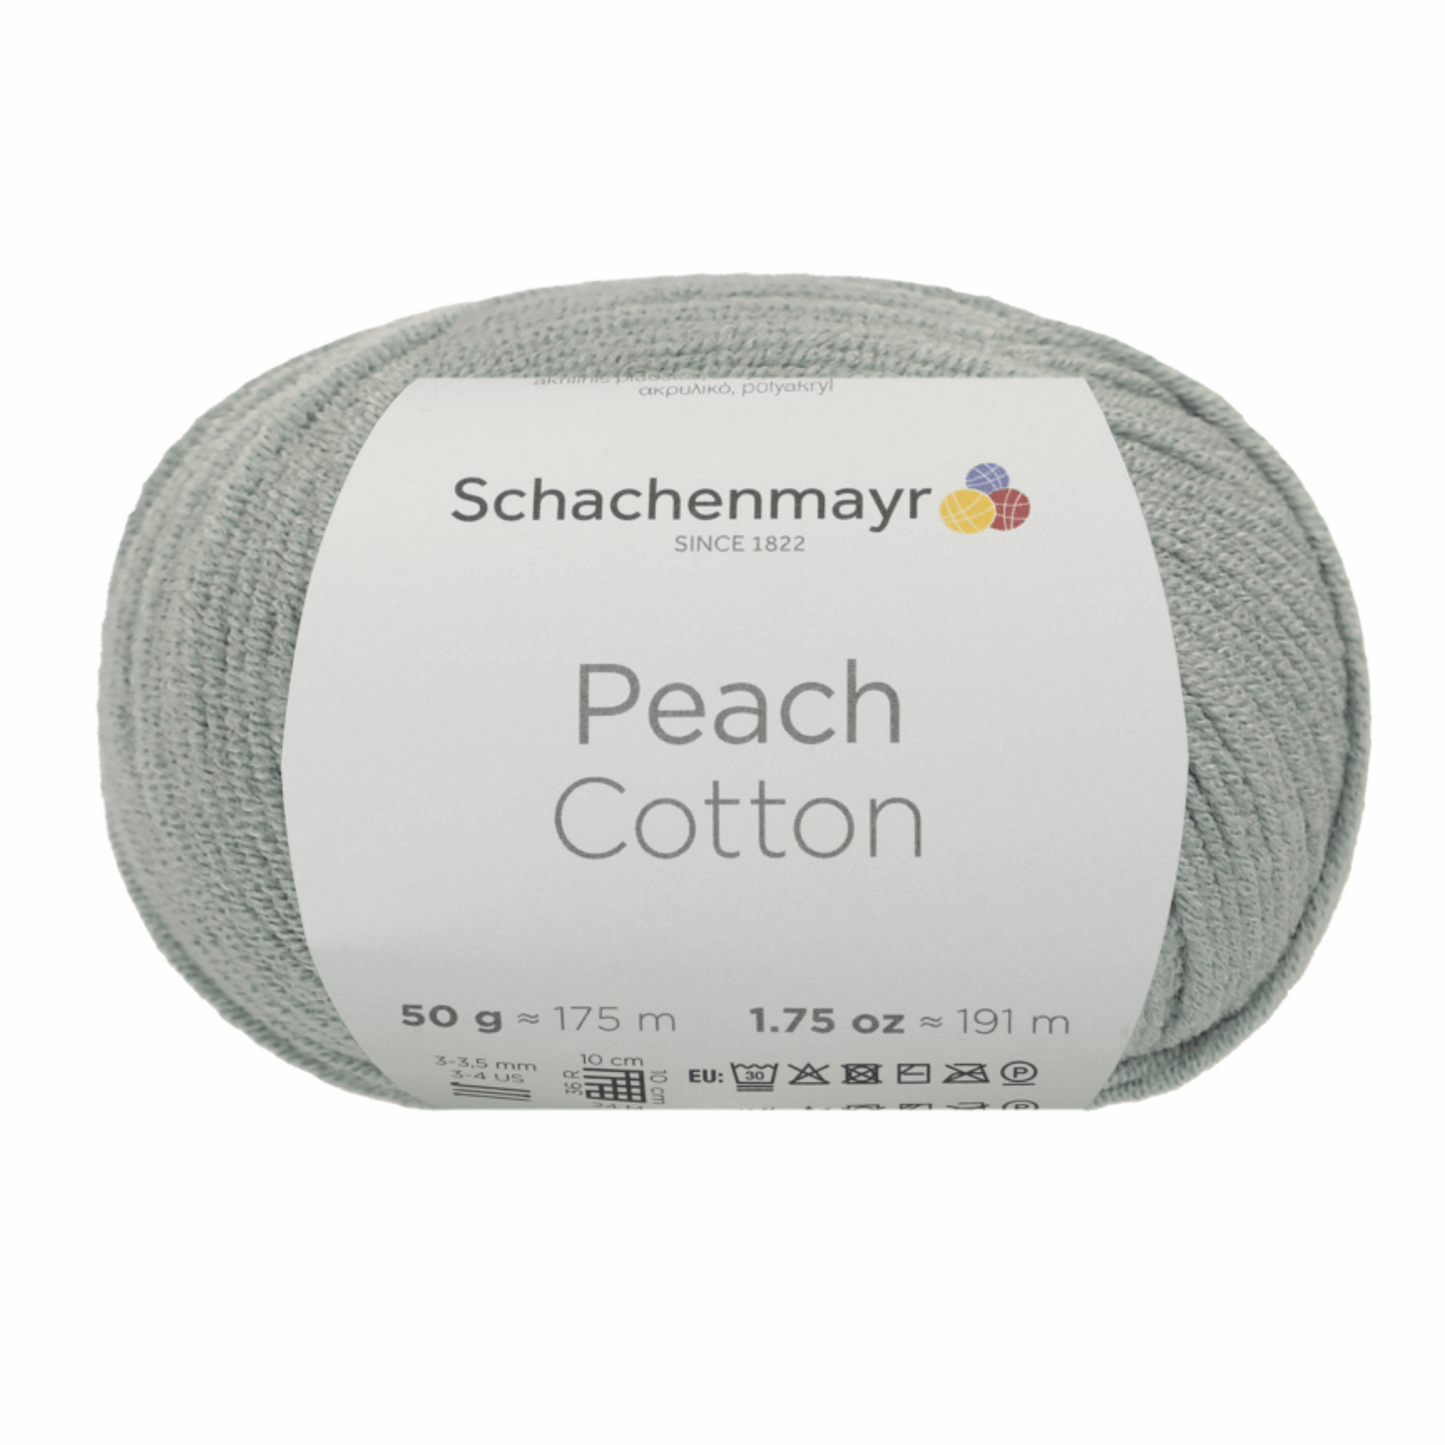 Peach Cotton 50g, 90371, Farbe 165, peppermint